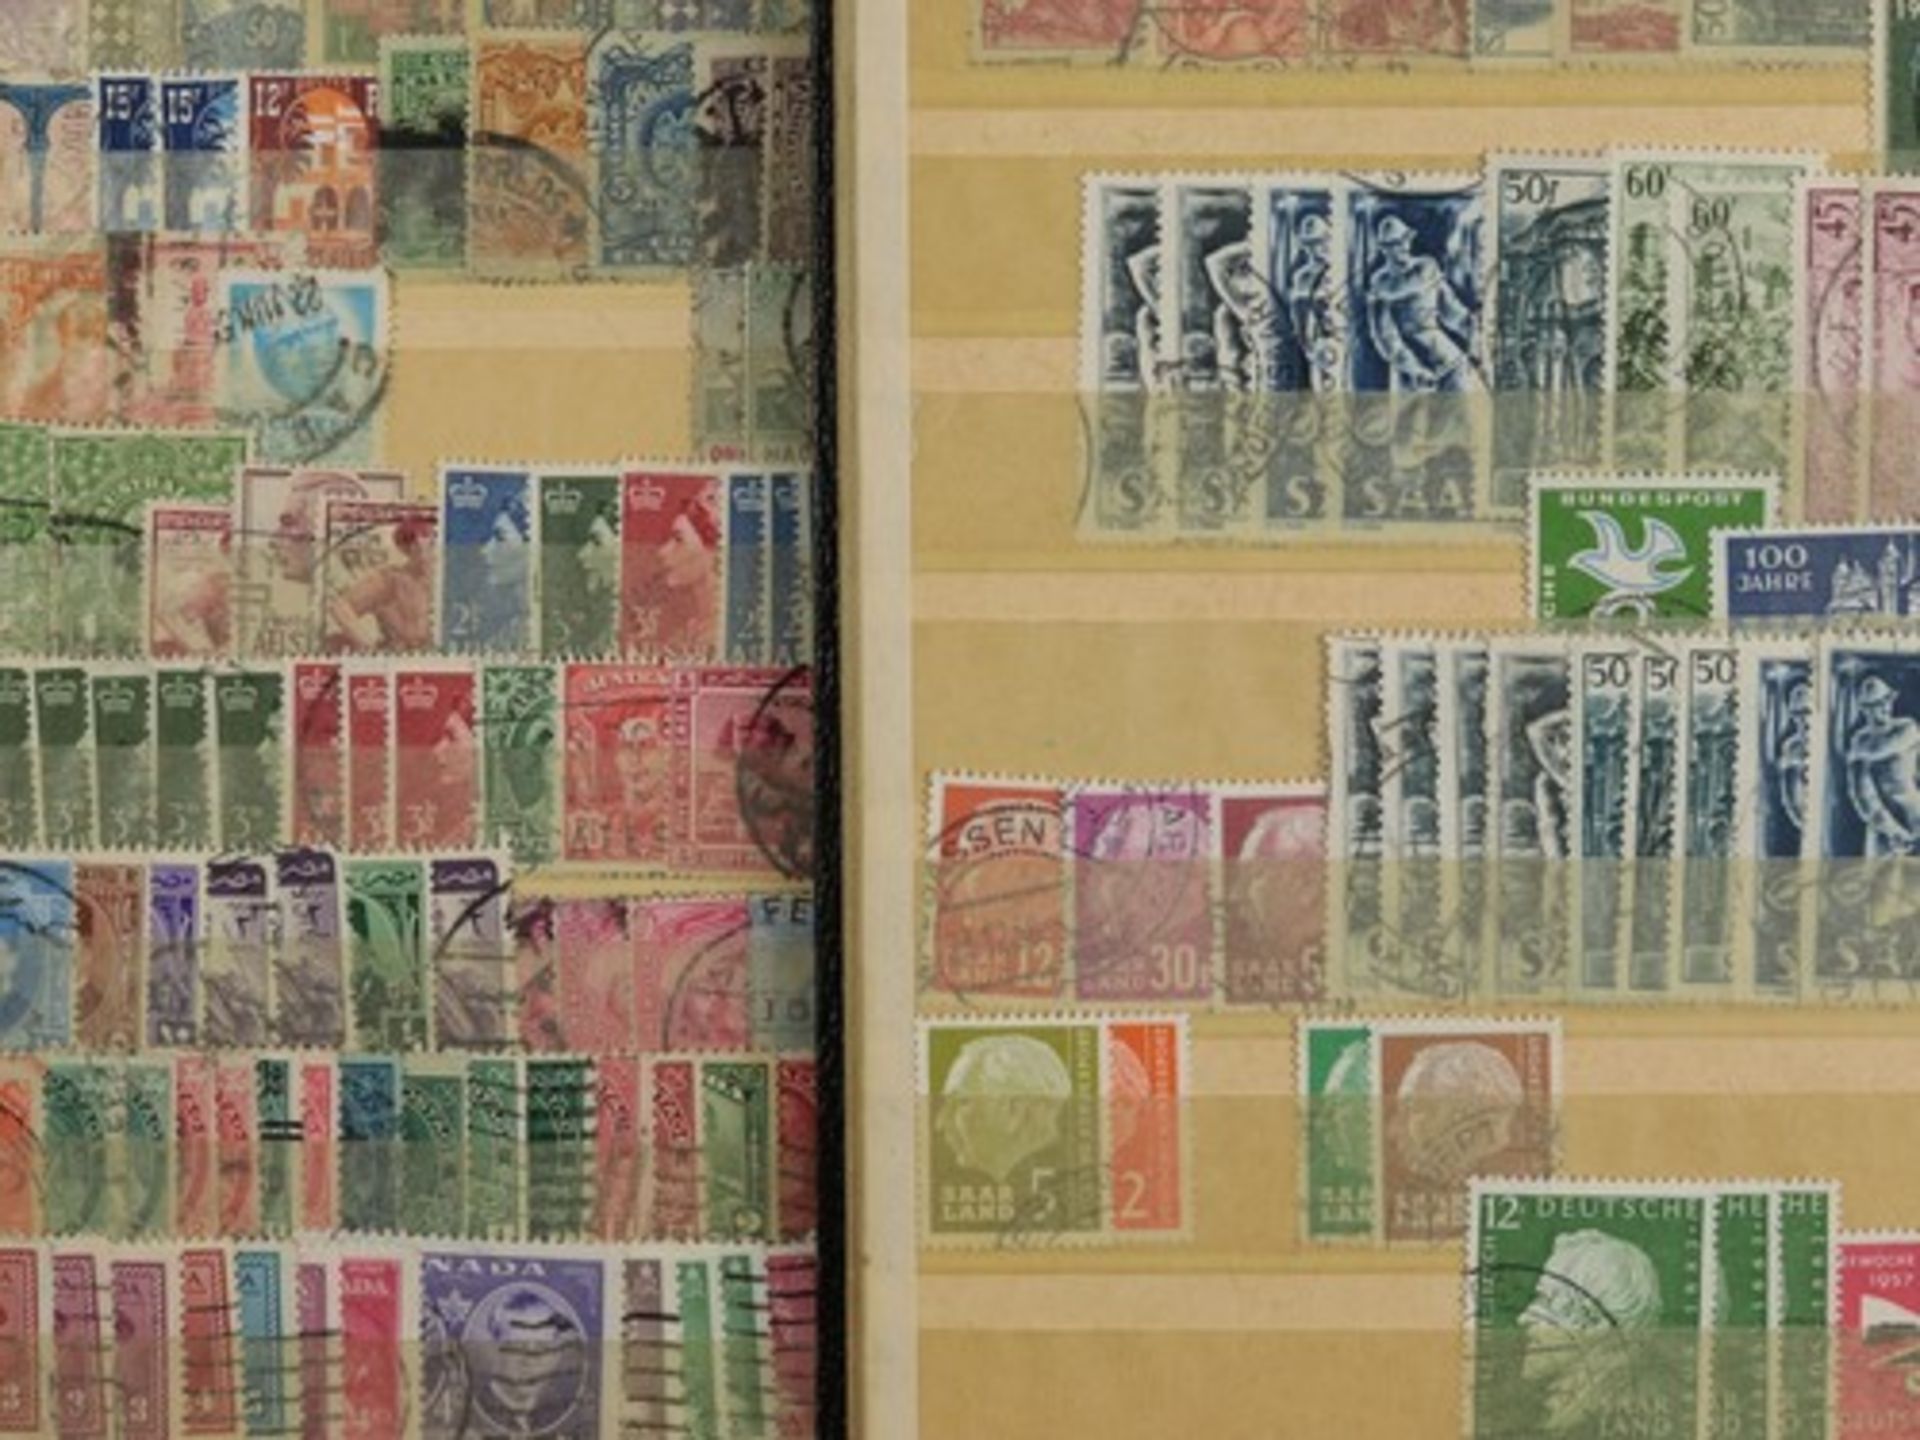 Briefmarken - Weltab ca. 1920, 5x versch. Alben, 2x Auswahlheft, lose Briefmarken, Inflationsmarken, - Bild 3 aus 3